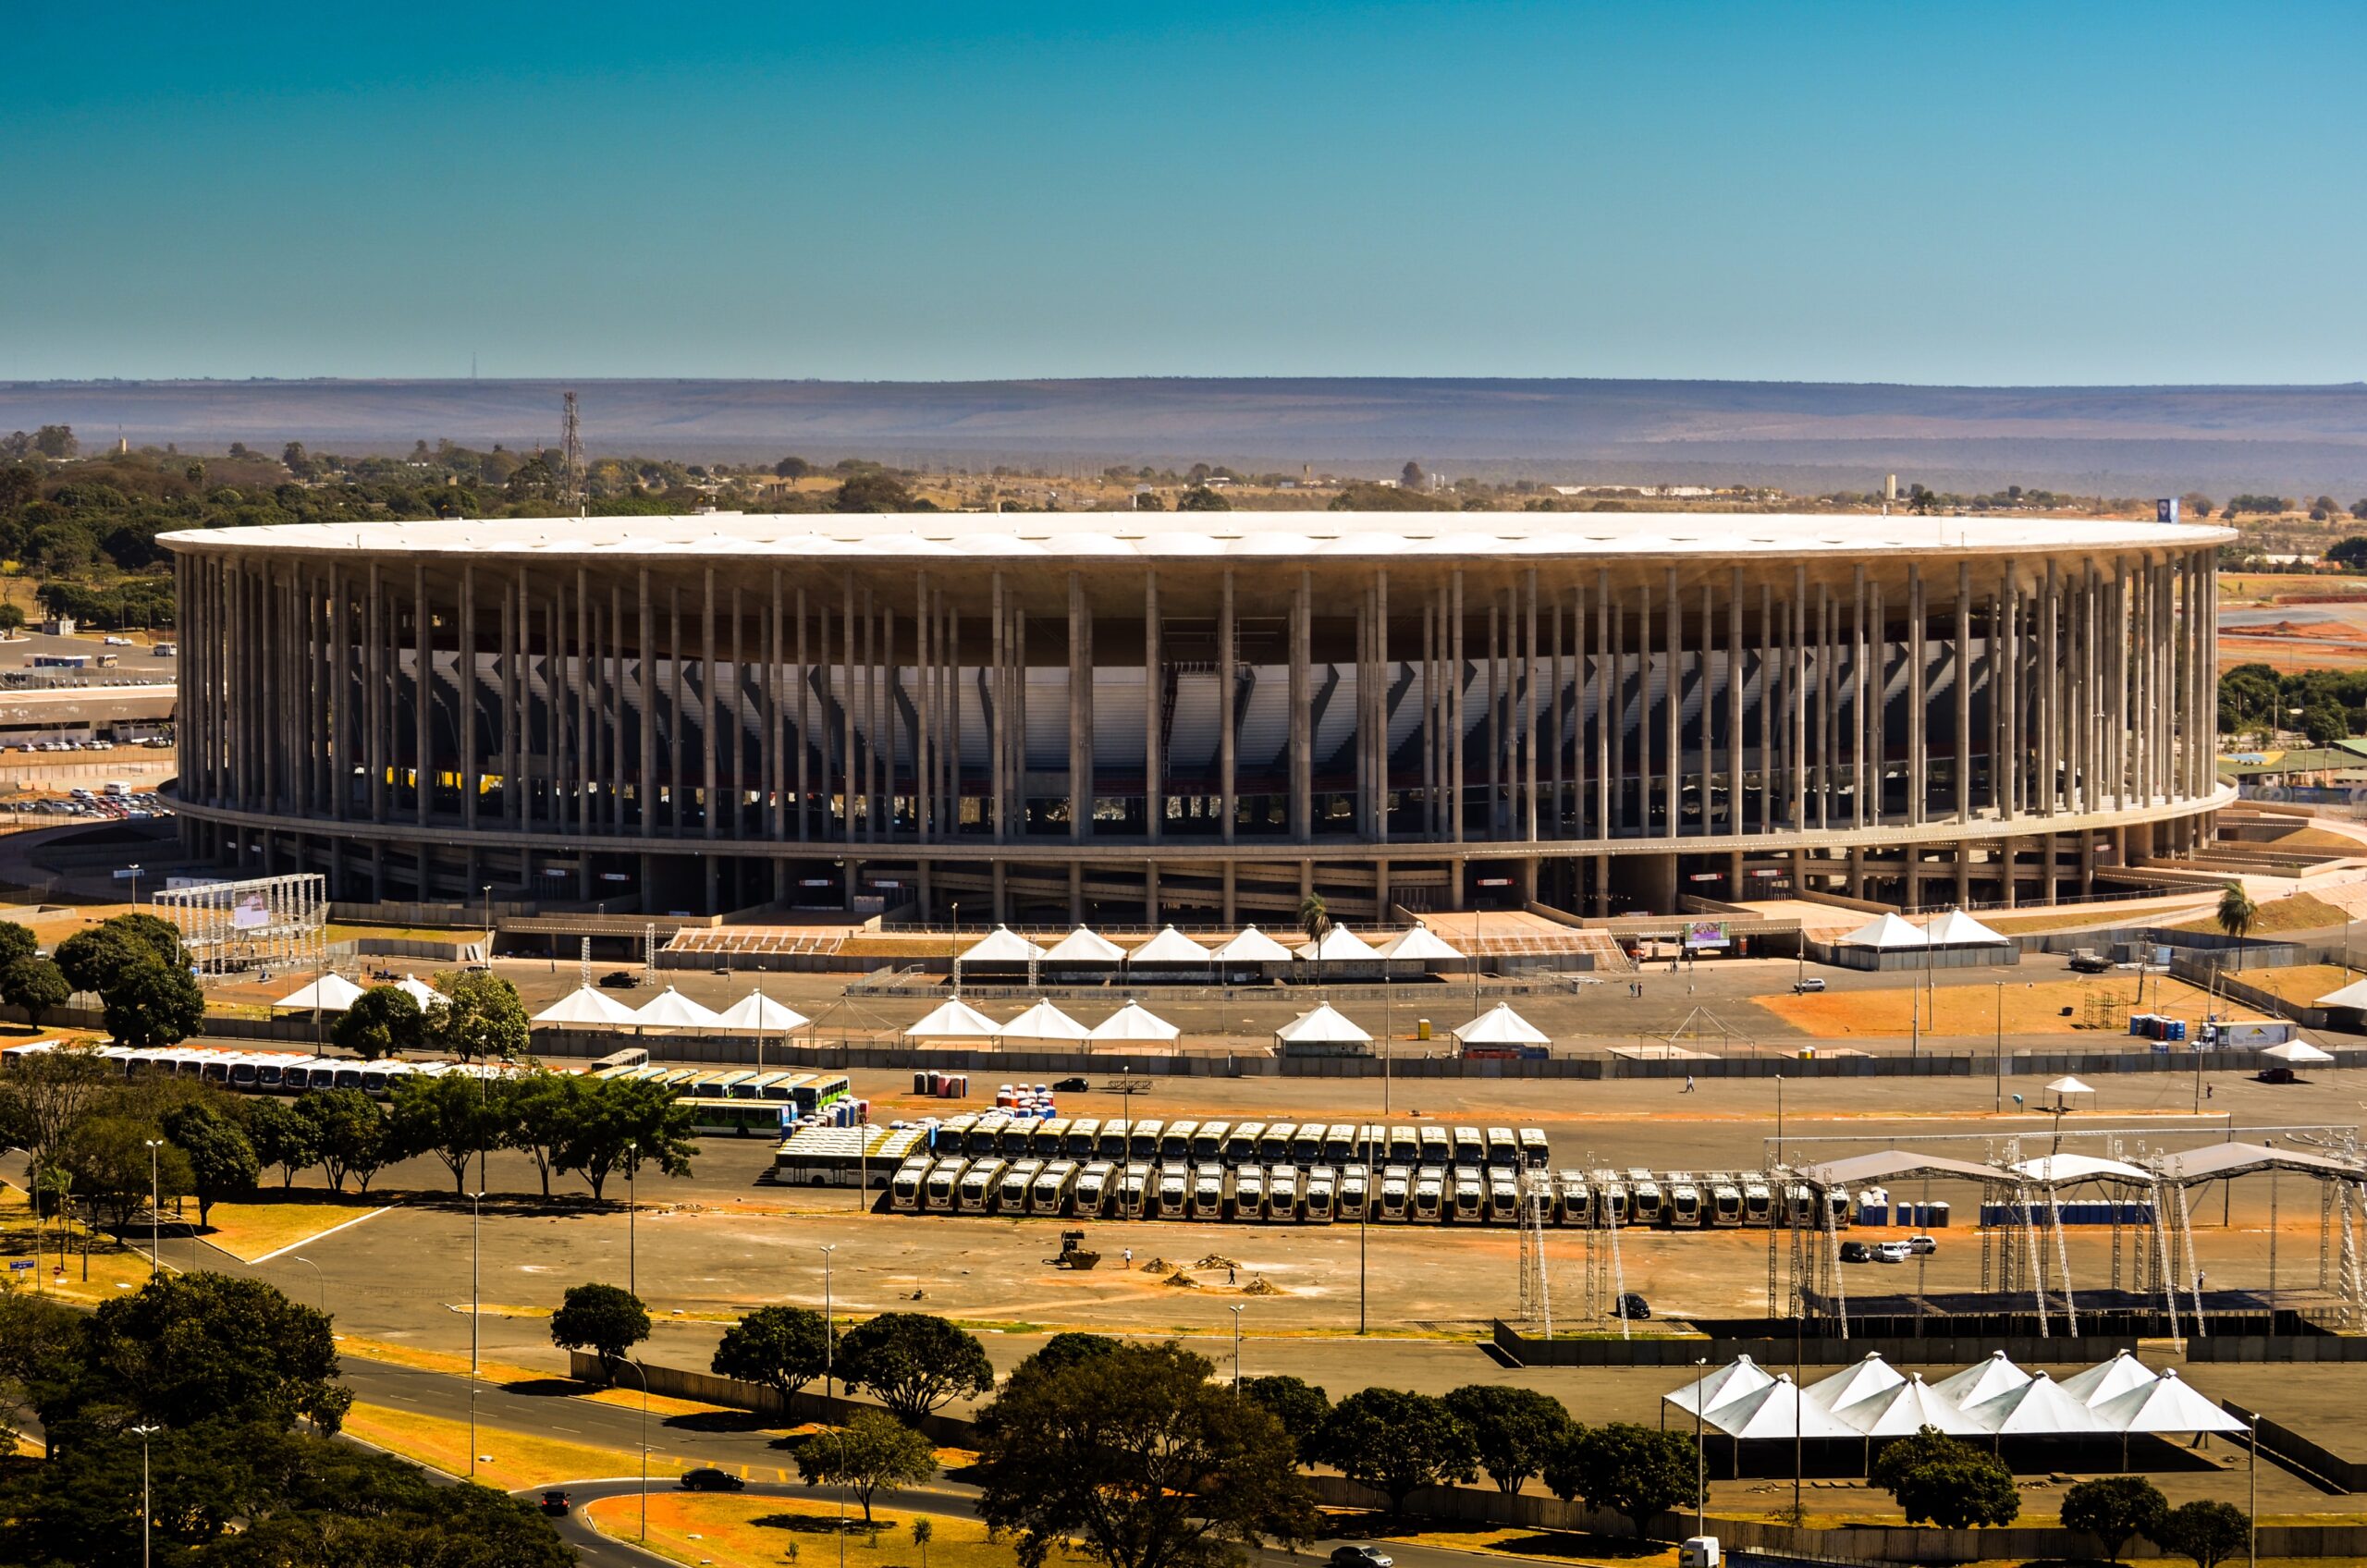 Você sabe quais são os maiores estádios da América do Sul? Saiba quais são os palcos colossais do continente e a importância desses estádios.